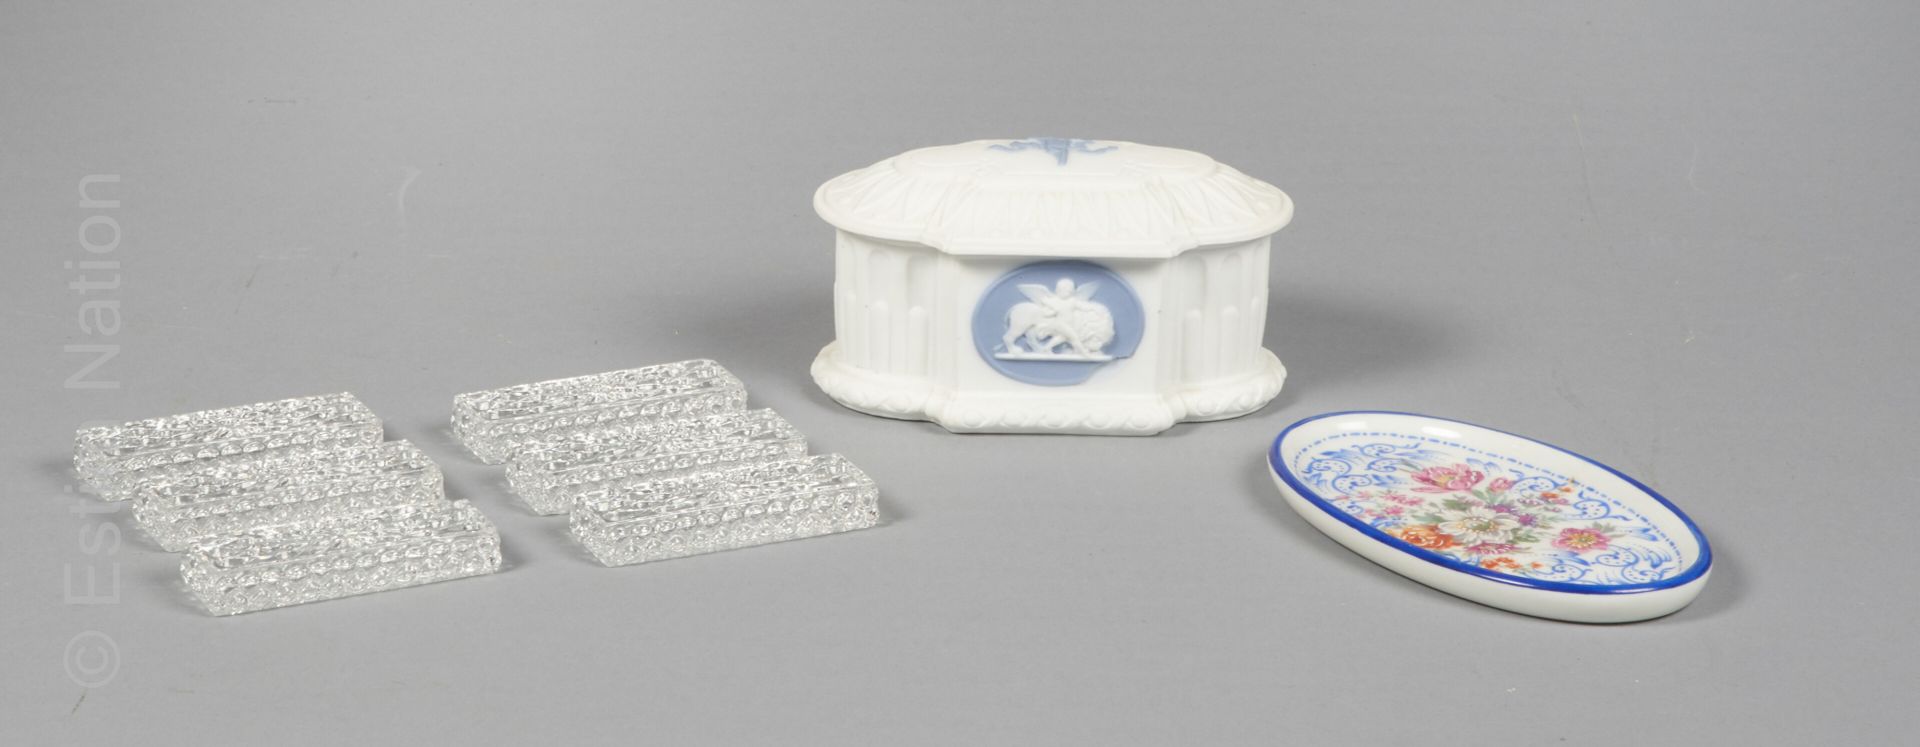 DIVERS - BACCARAT 6个水晶刀架，已签名

- 韦奇伍德风格的白色和蓝色装饰的瓷盒 - 宽度：14厘米

- 多彩瓷器袖珍盒

(罕见的磨损)